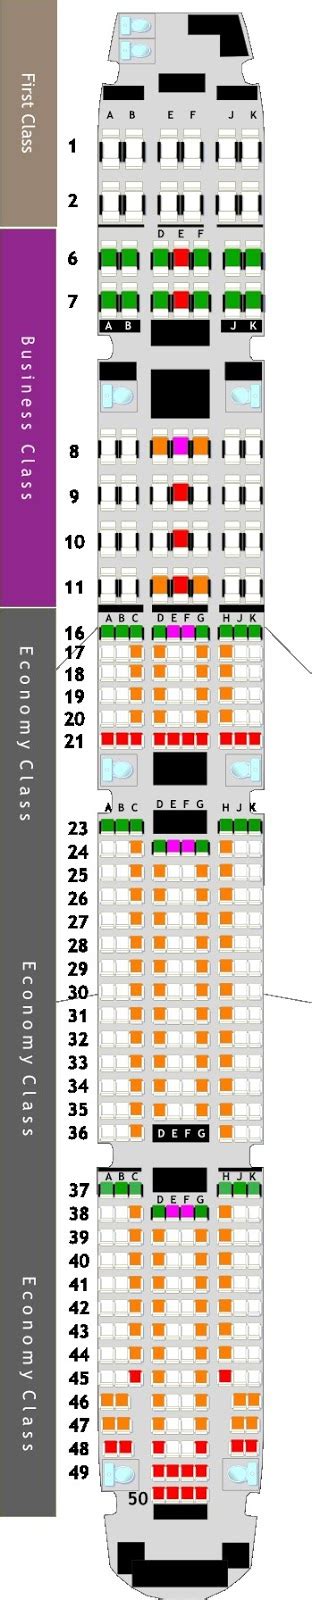 48 Seating Plan For Emirates 777 300er